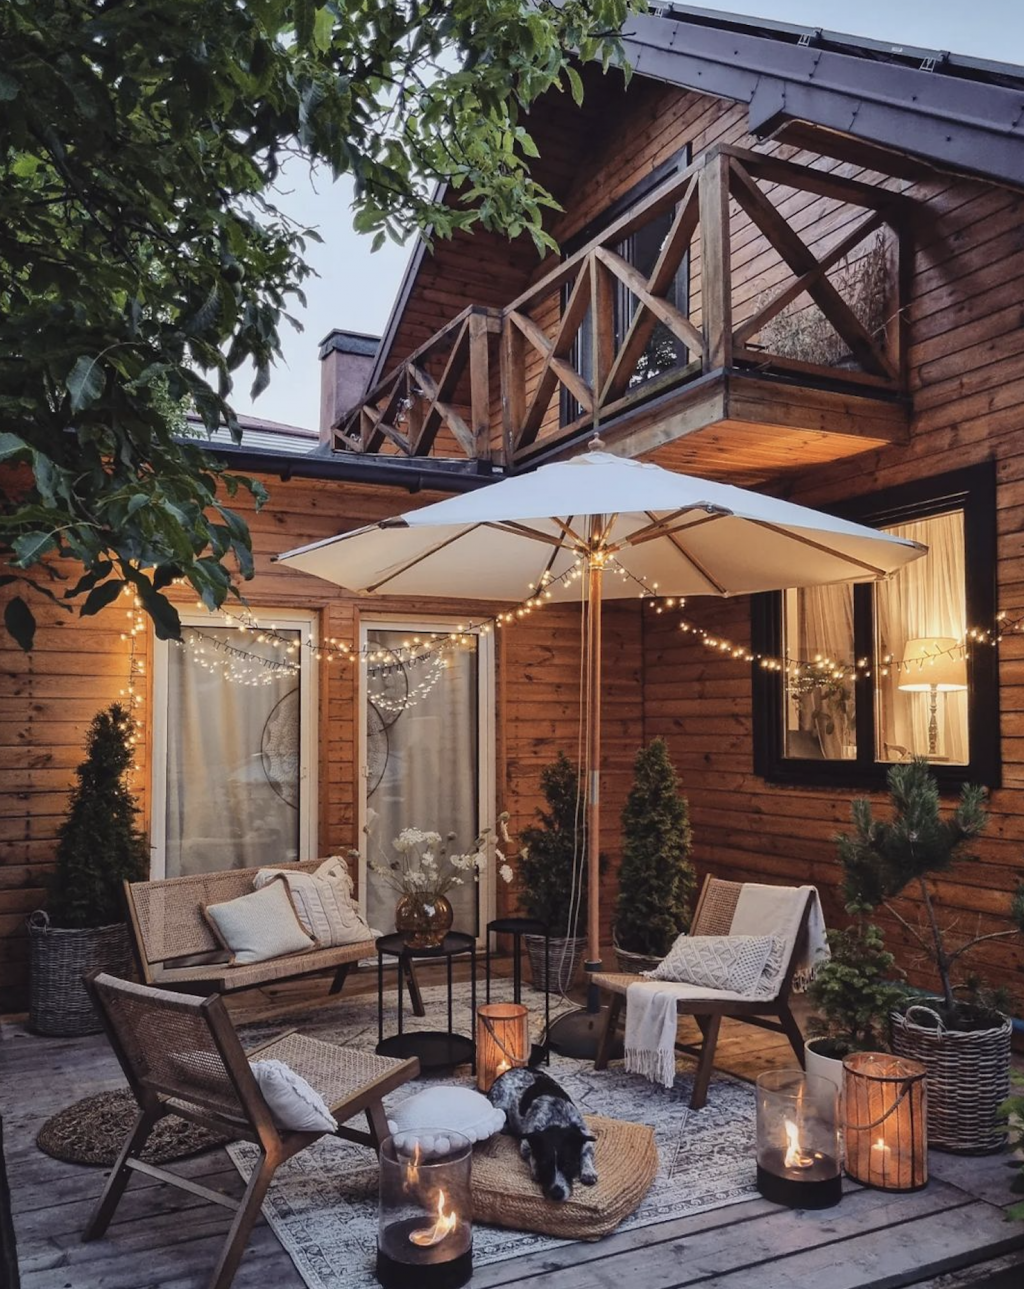 How to Create a Backyard Oasis on a Budget